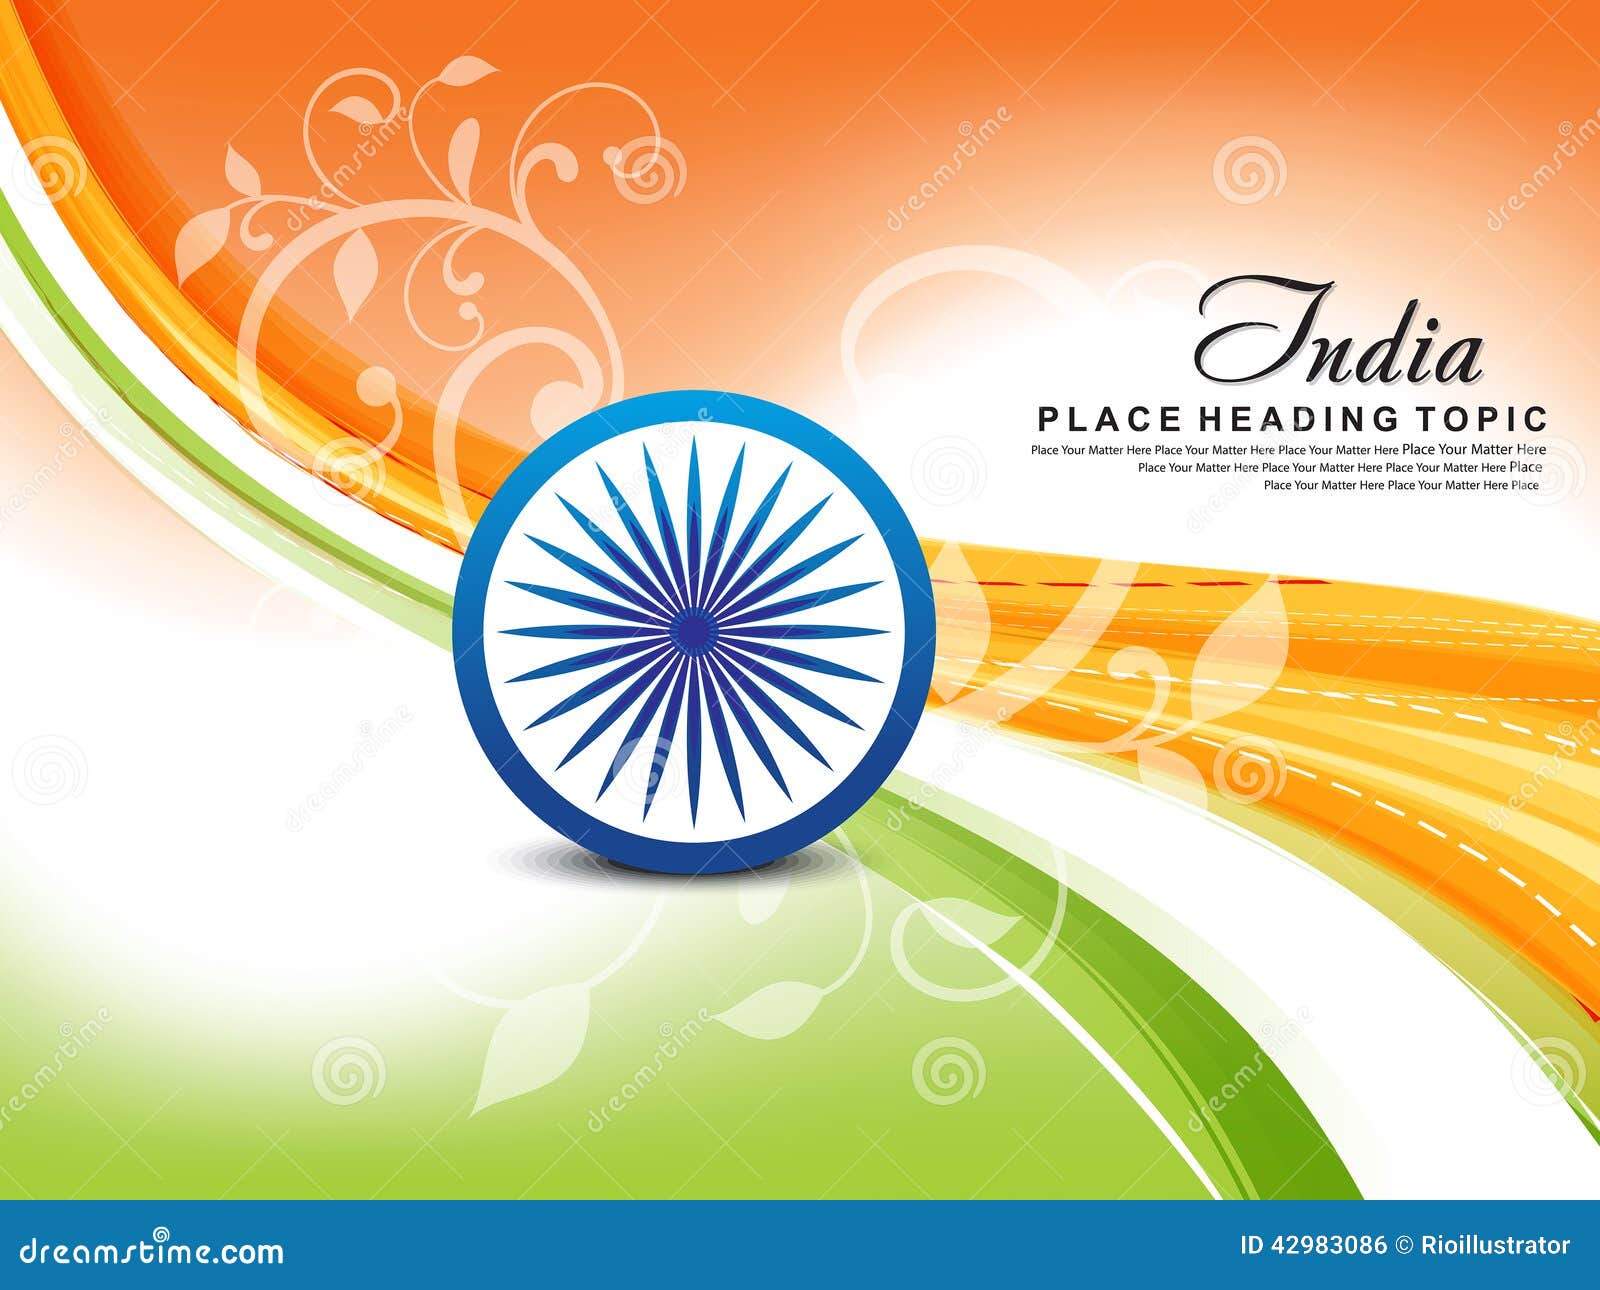 Hình nền ngày 15 tháng 8 - Bộ ảnh nền đầy ý nghĩa tôn vinh sự giải phóng và độc lập cho quốc gia Ấn Độ. Hãy cập nhật ngay bộ ảnh này để tạo nên không khí lễ hội trên màn hình điện thoại hoặc máy tính của bạn.